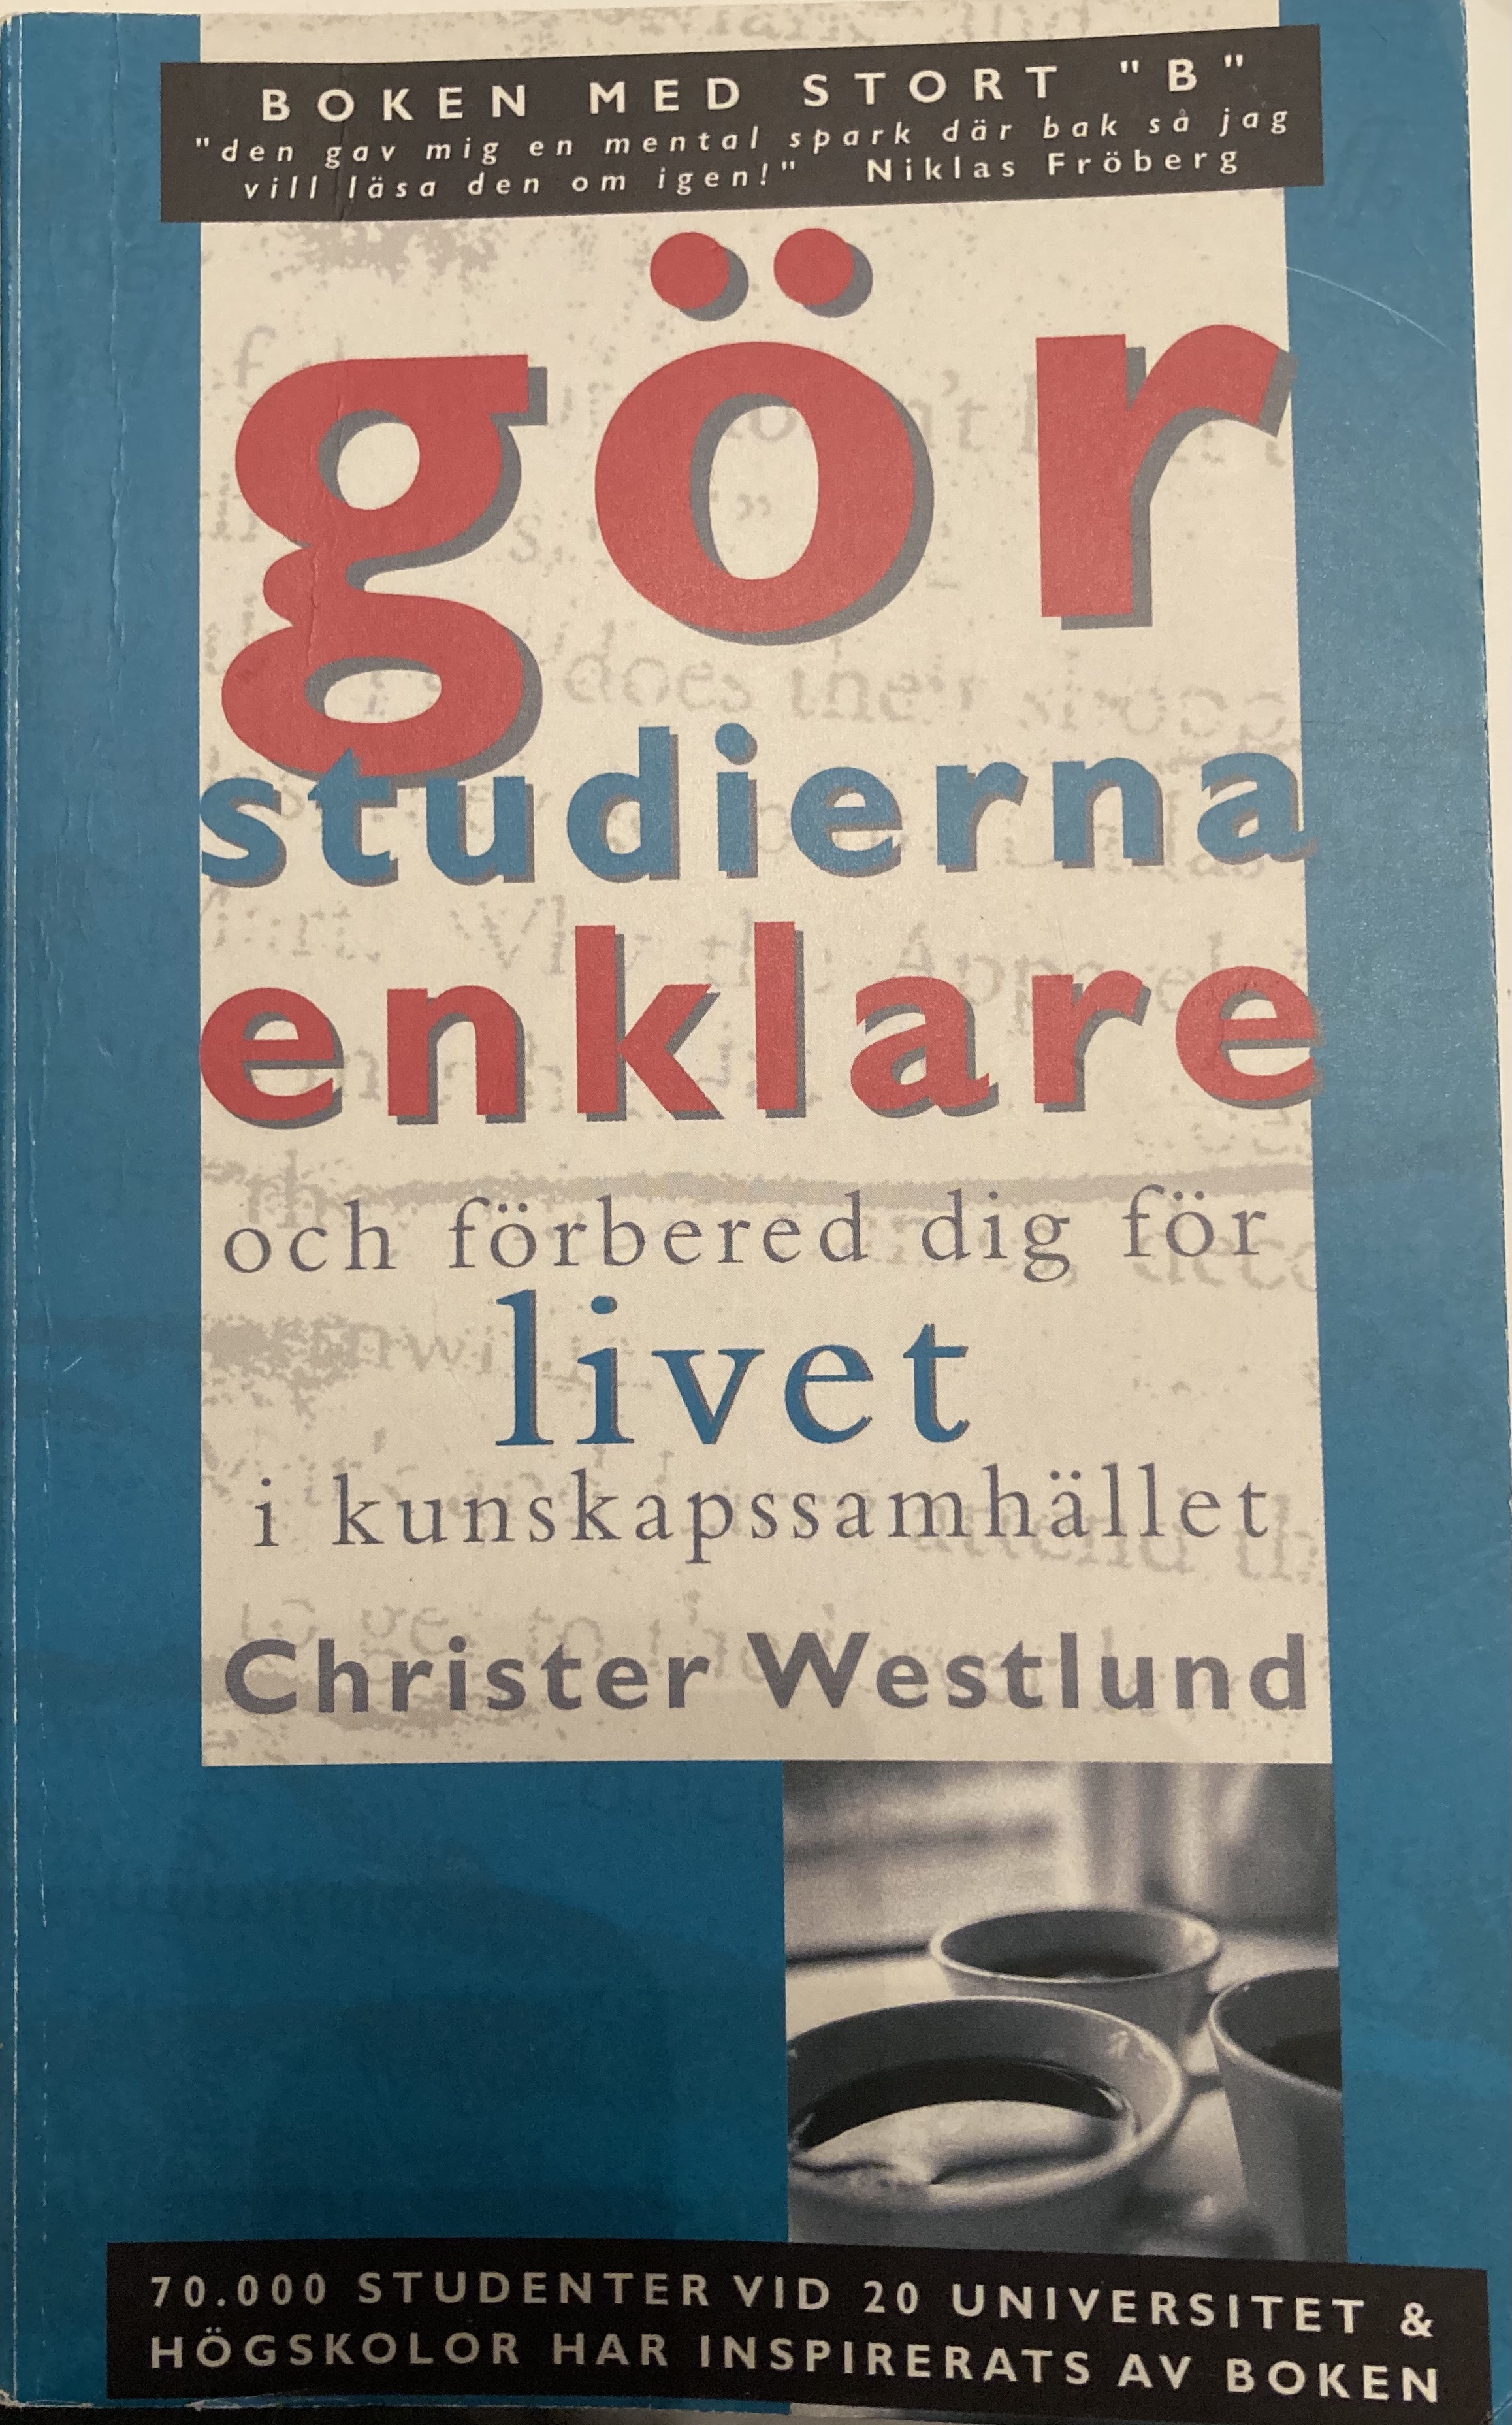 Gör studierna enklare och förbered dig för livet i kunskapssamhället; Christer Westlund; 2007